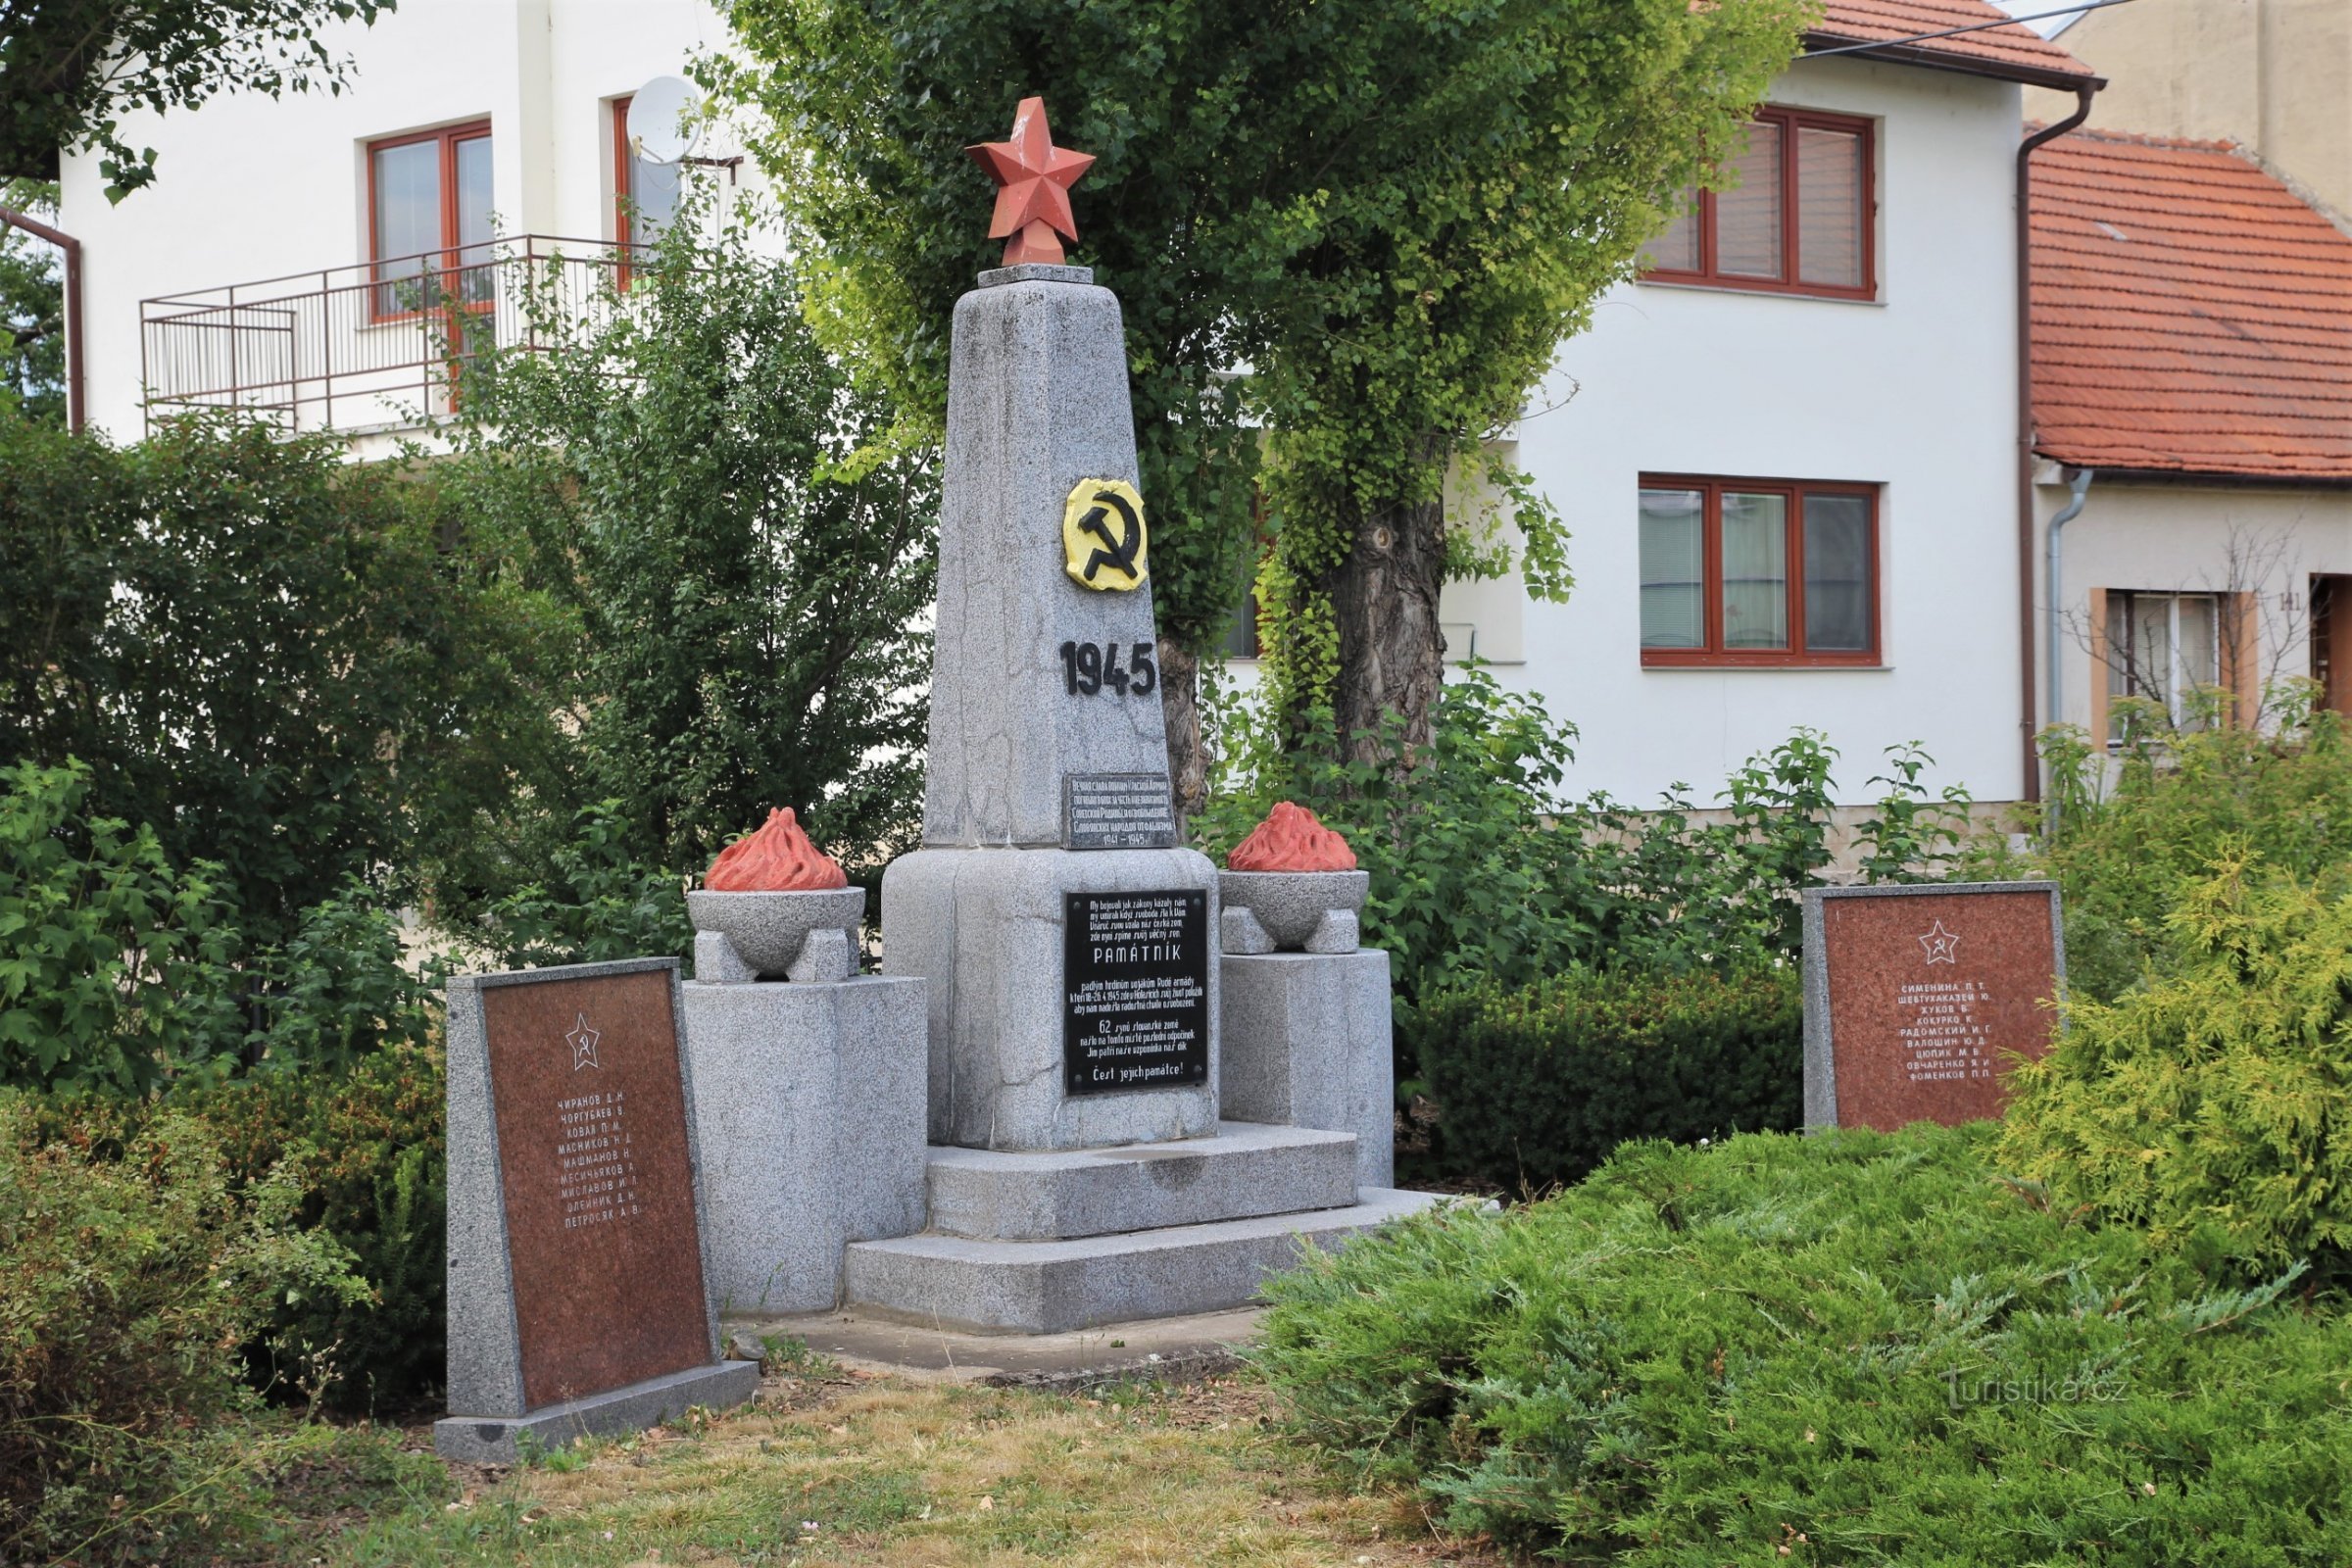 Đài tưởng niệm các chiến sĩ Hồng quân đã ngã xuống, vẫn còn ở đây cho đến năm 2018 - mùa hè 2016